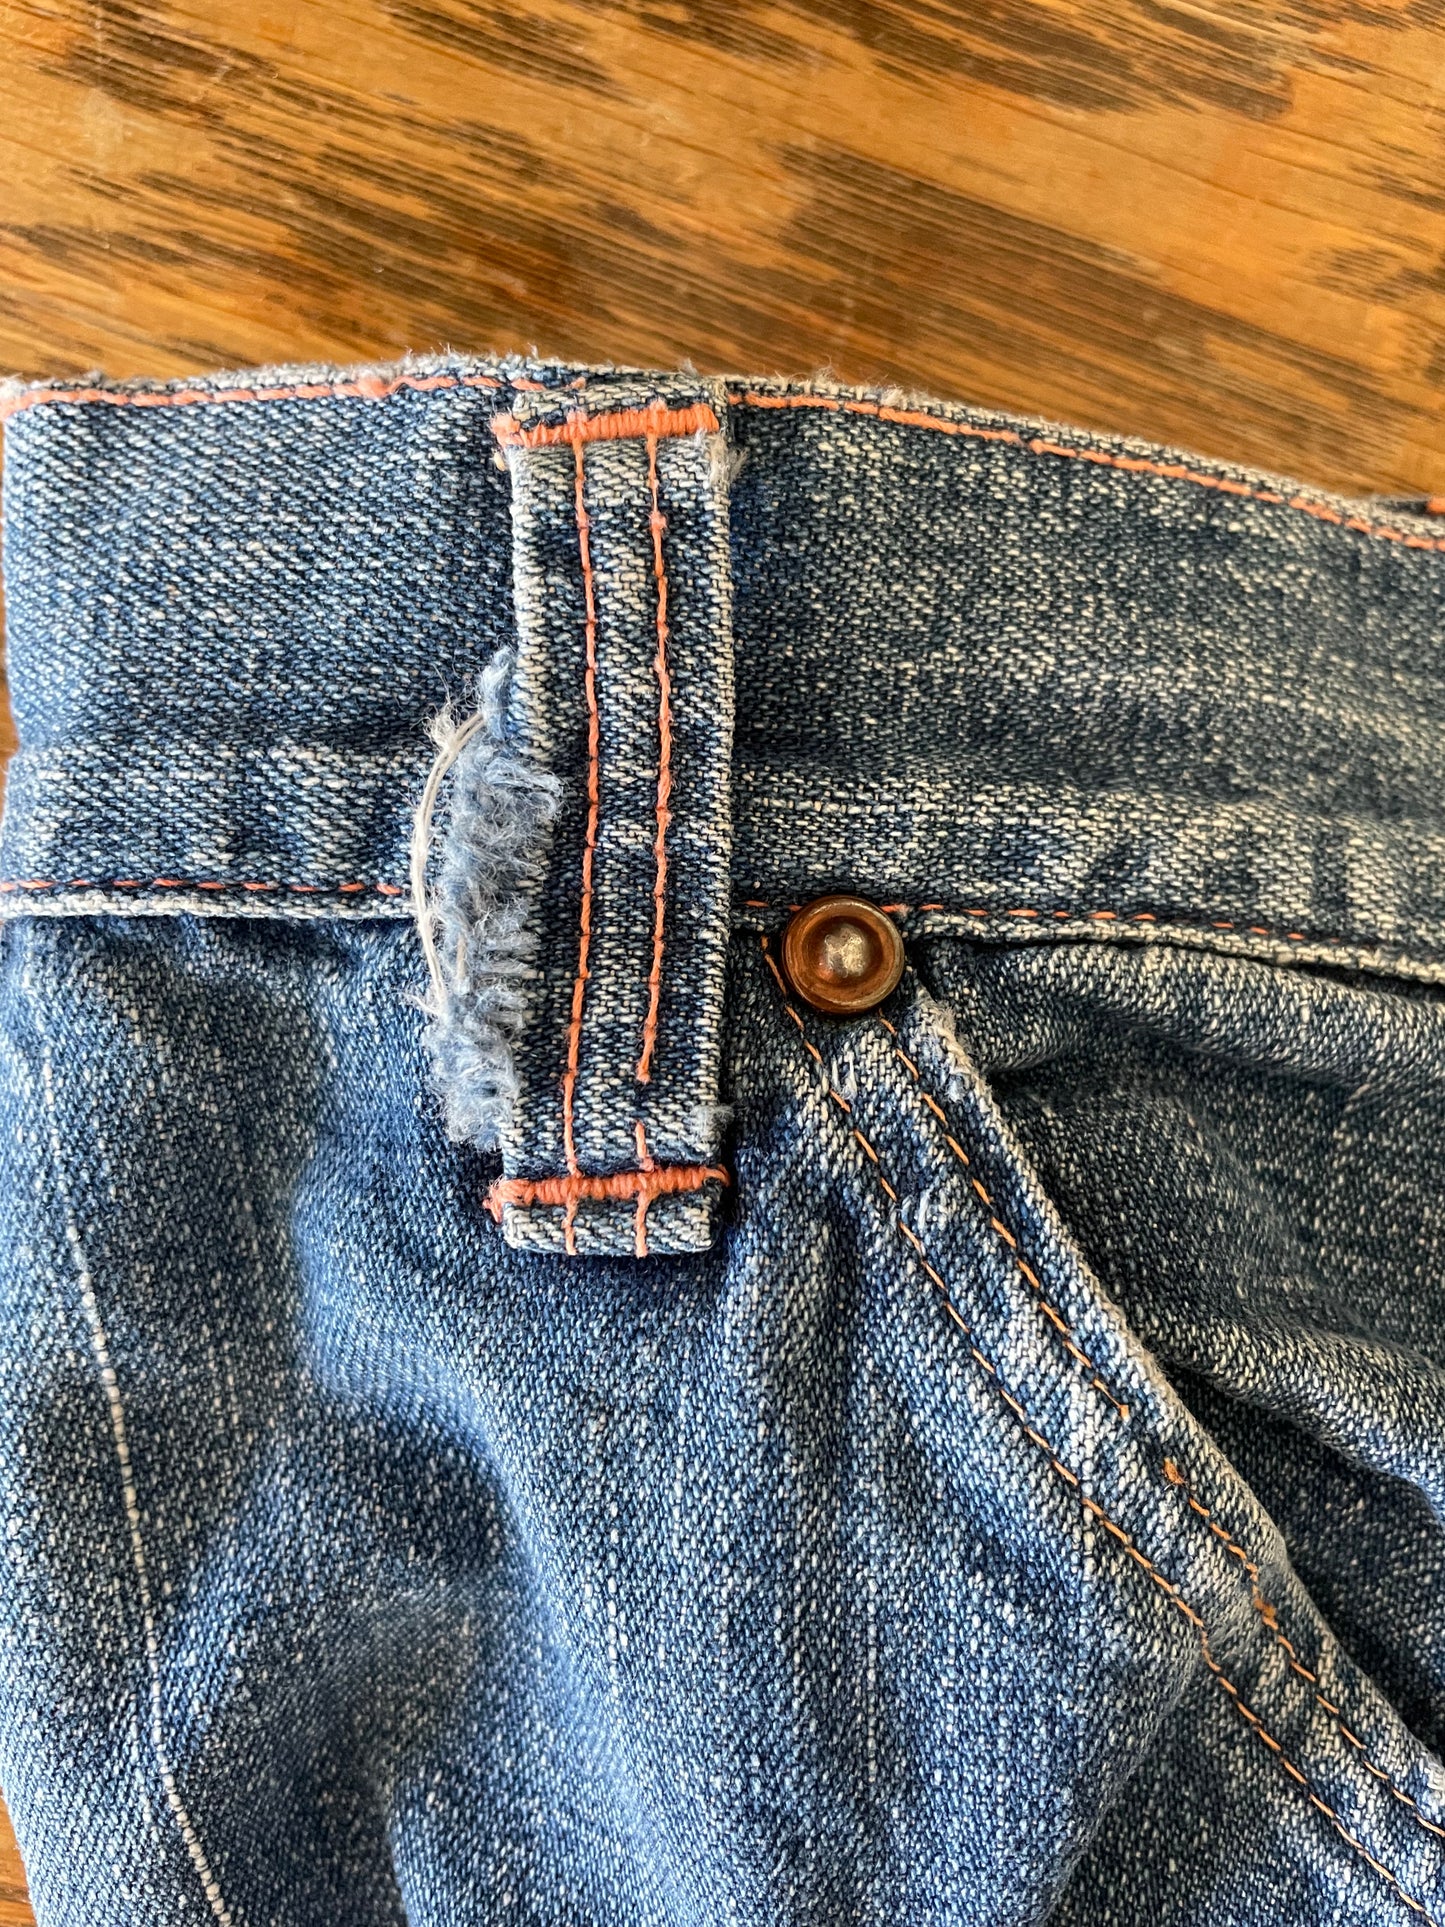 40s/50s Side Zip Jeans